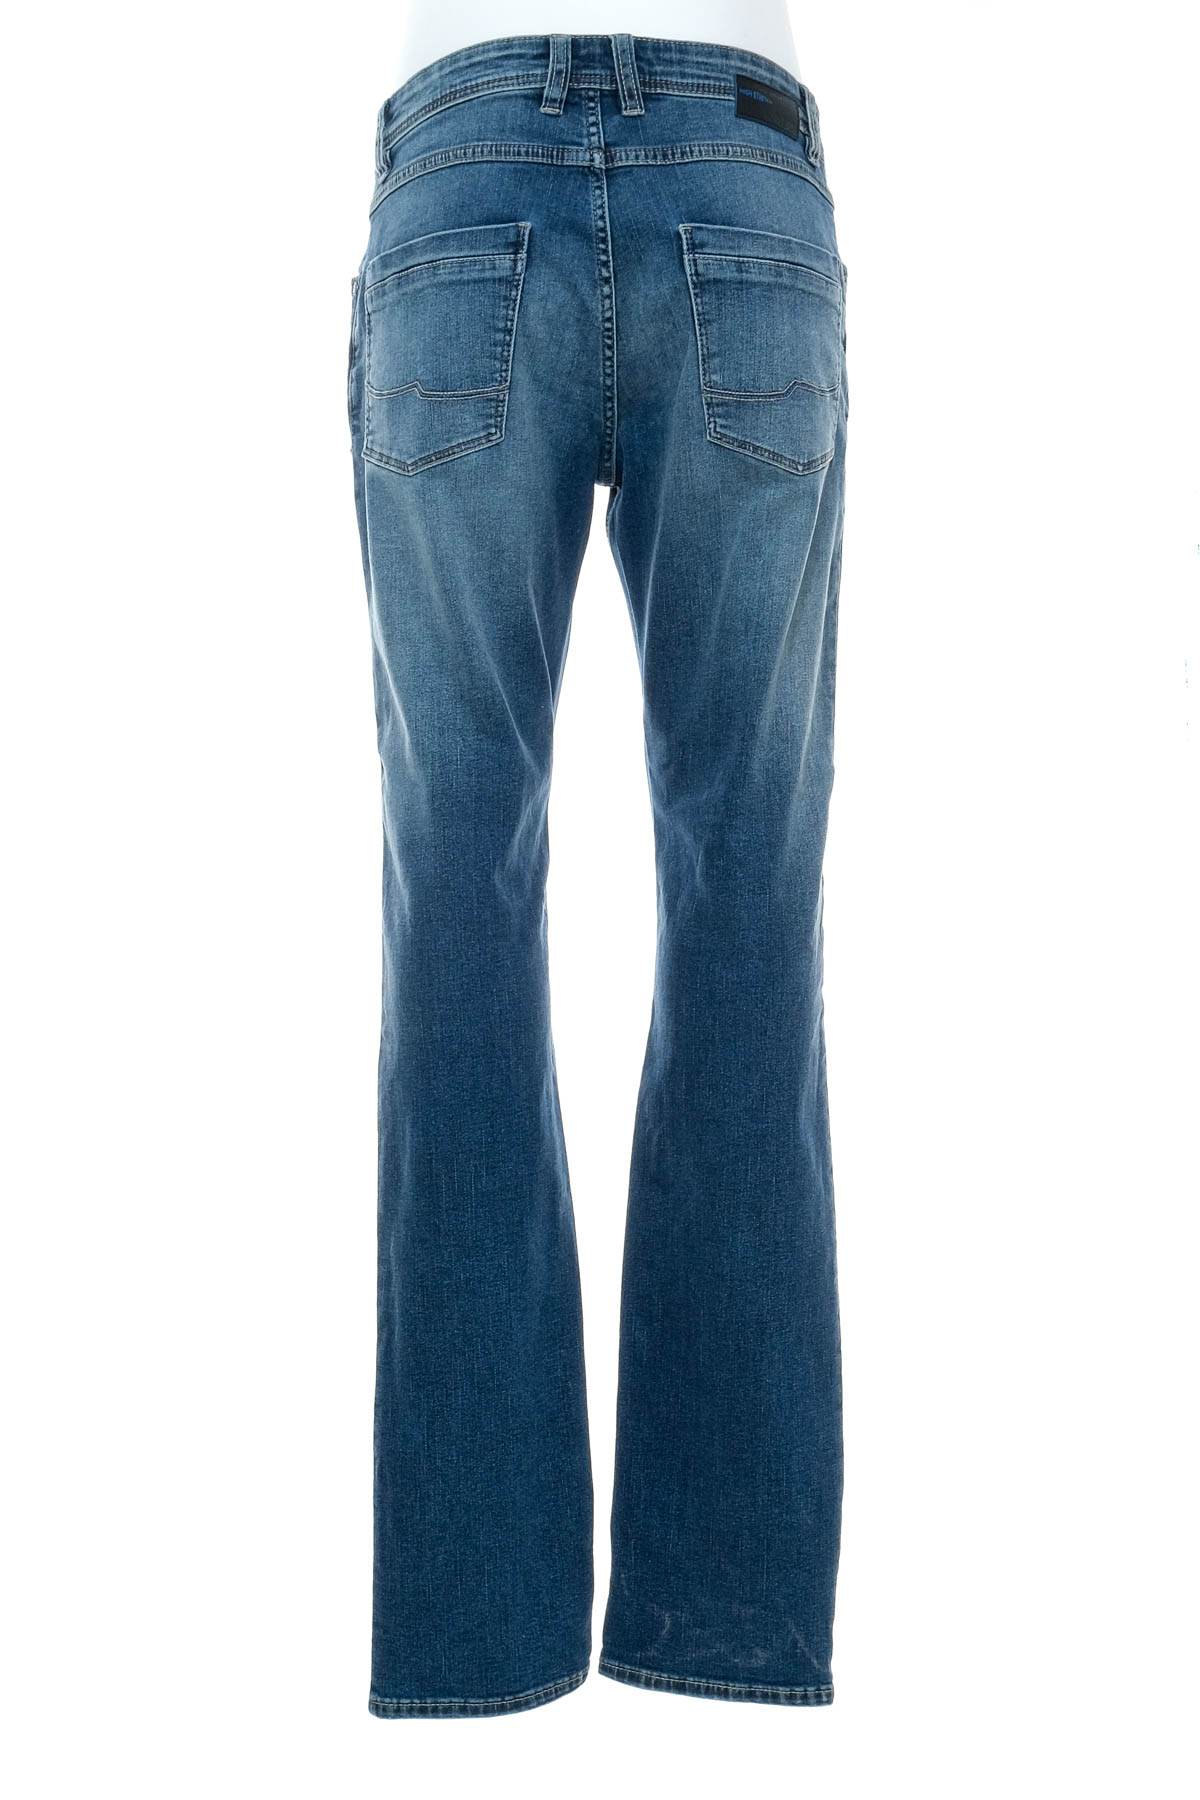 Jeans pentru bărbăți - Jean Carriere - 1